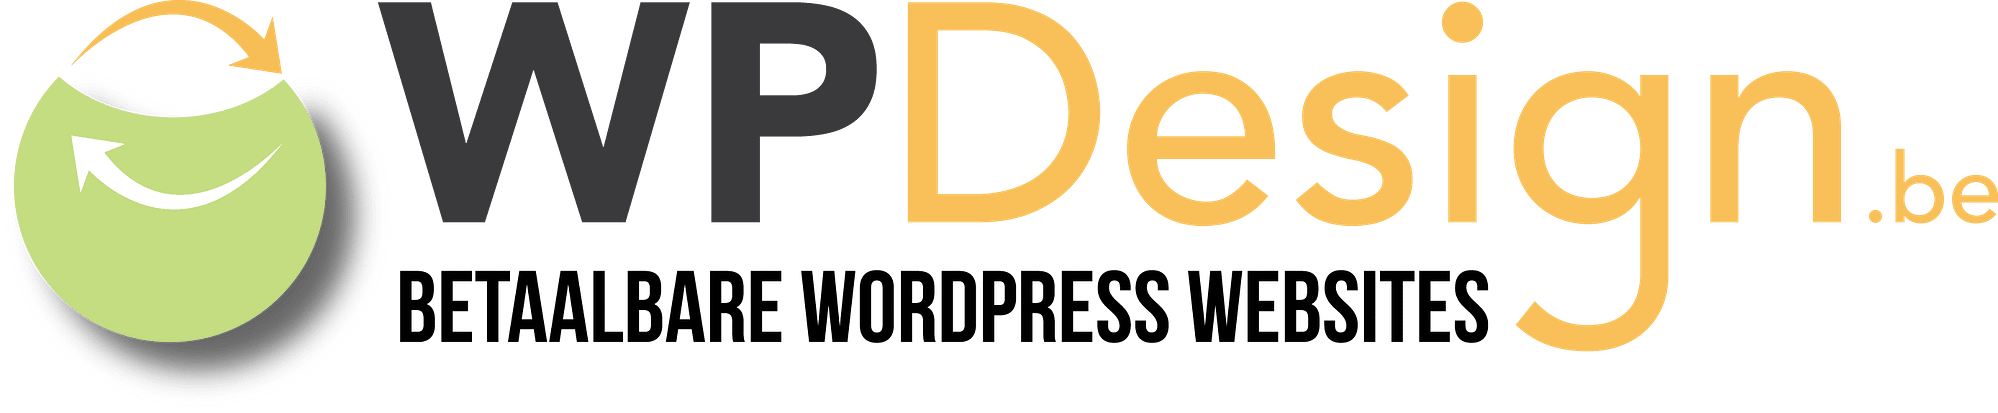 wpdesign webdesign groot logo